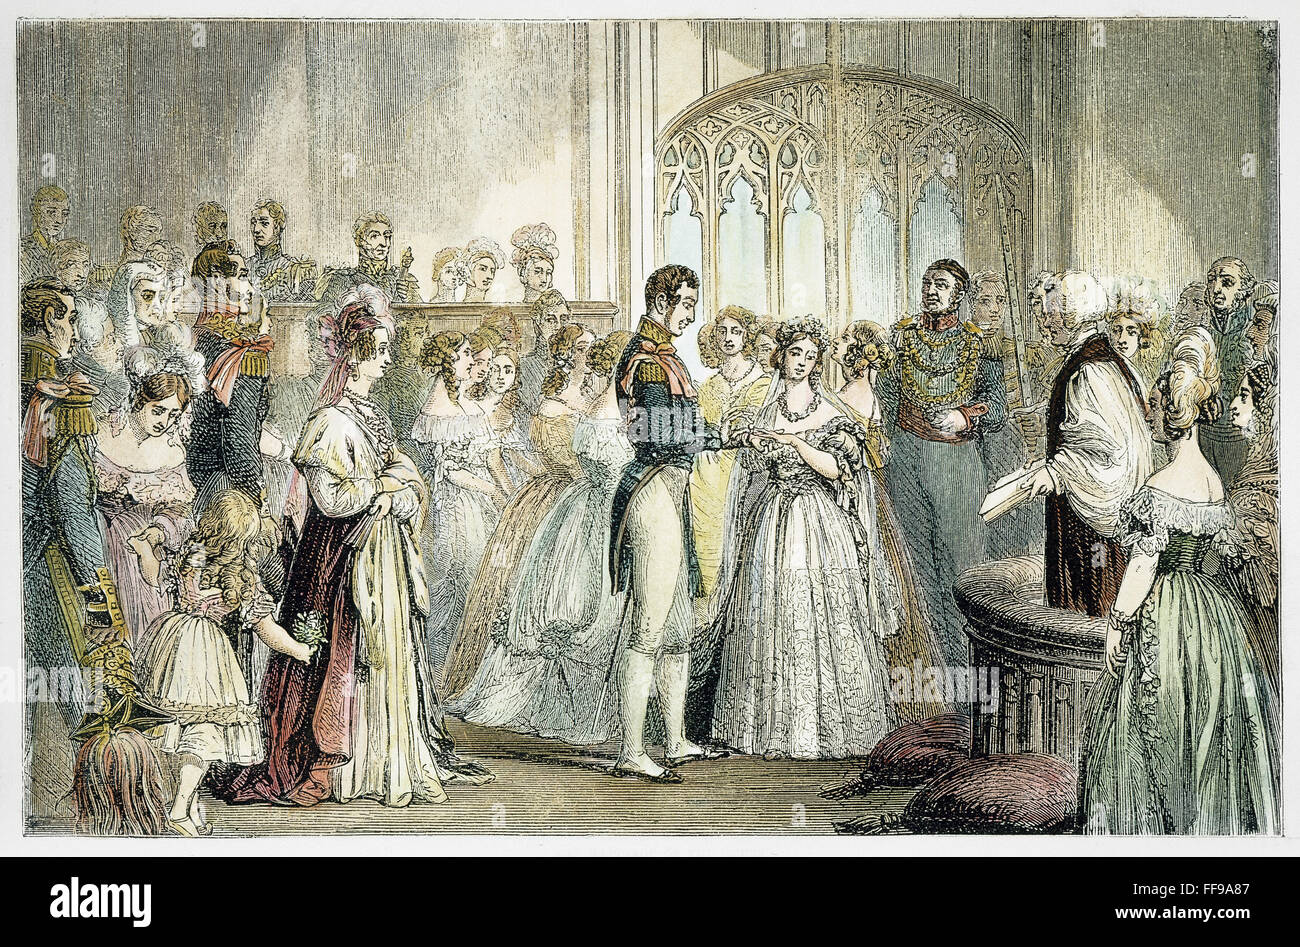 Mariage de la reine Victoria. /Nla mariage de la reine Victoria d'Angleterre et le Prince Albert de Saxe-Cobourg-Gotha, 10 février 1840. La gravure sur bois, 19e siècle. Banque D'Images